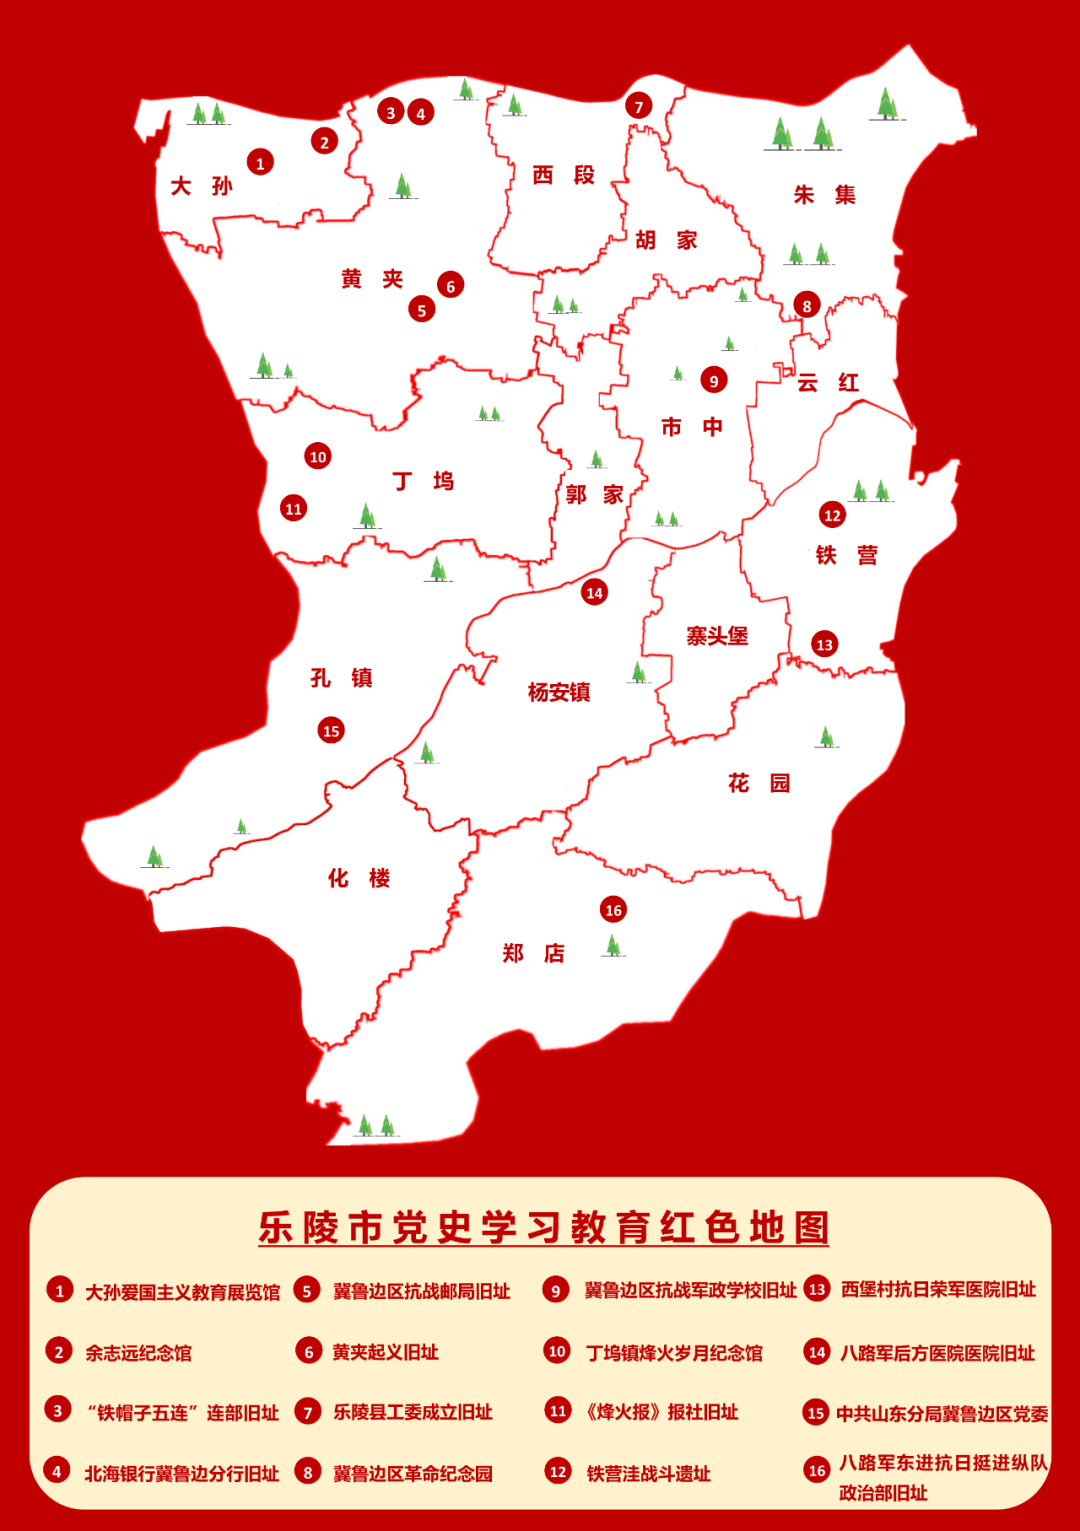 绍兴上虞发布浙江省内首套《红色地图》